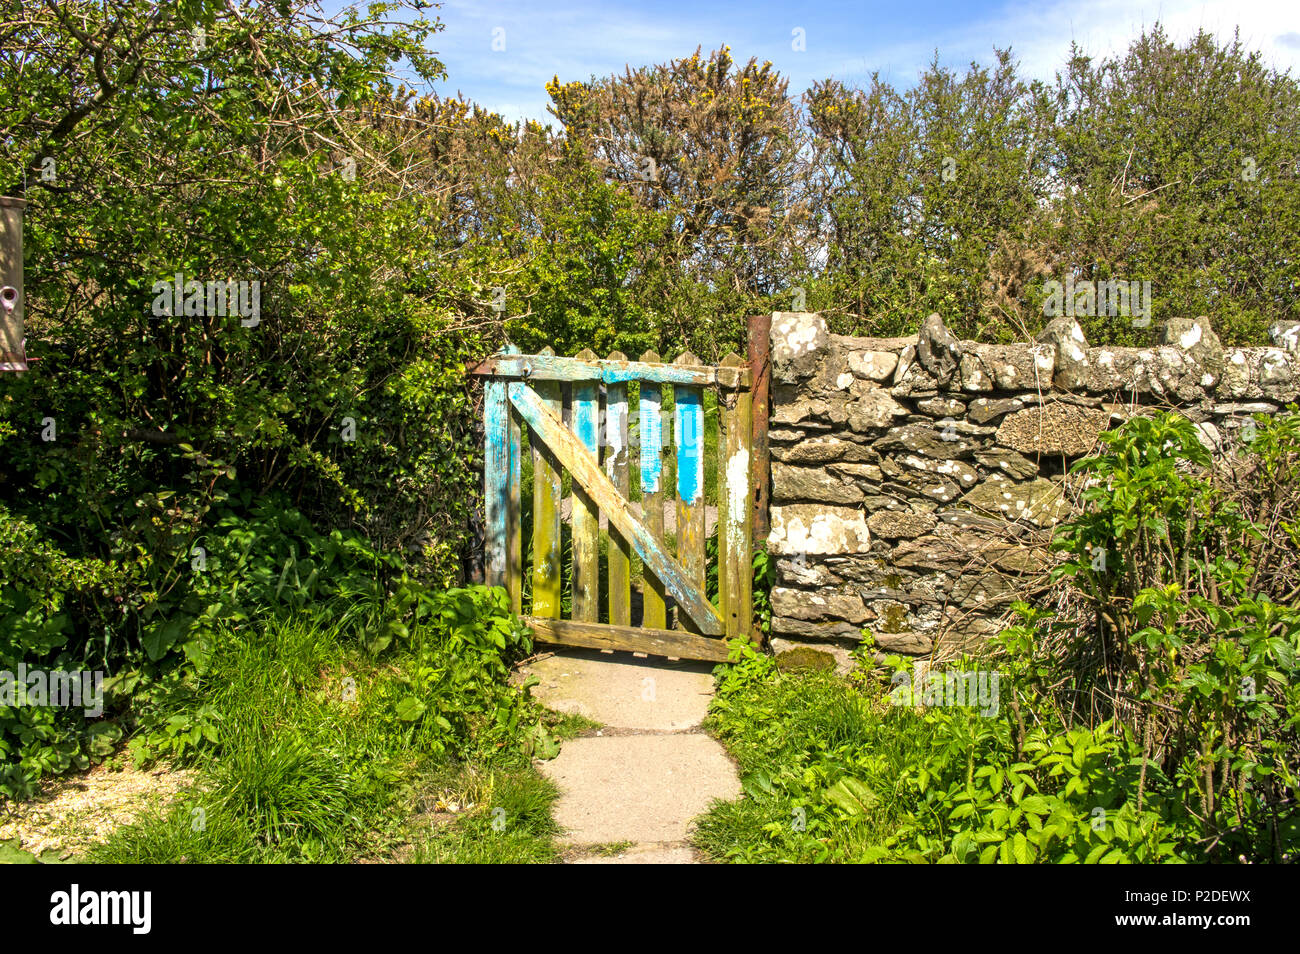 An old wooden gate to a rural garden garden Stock Photo